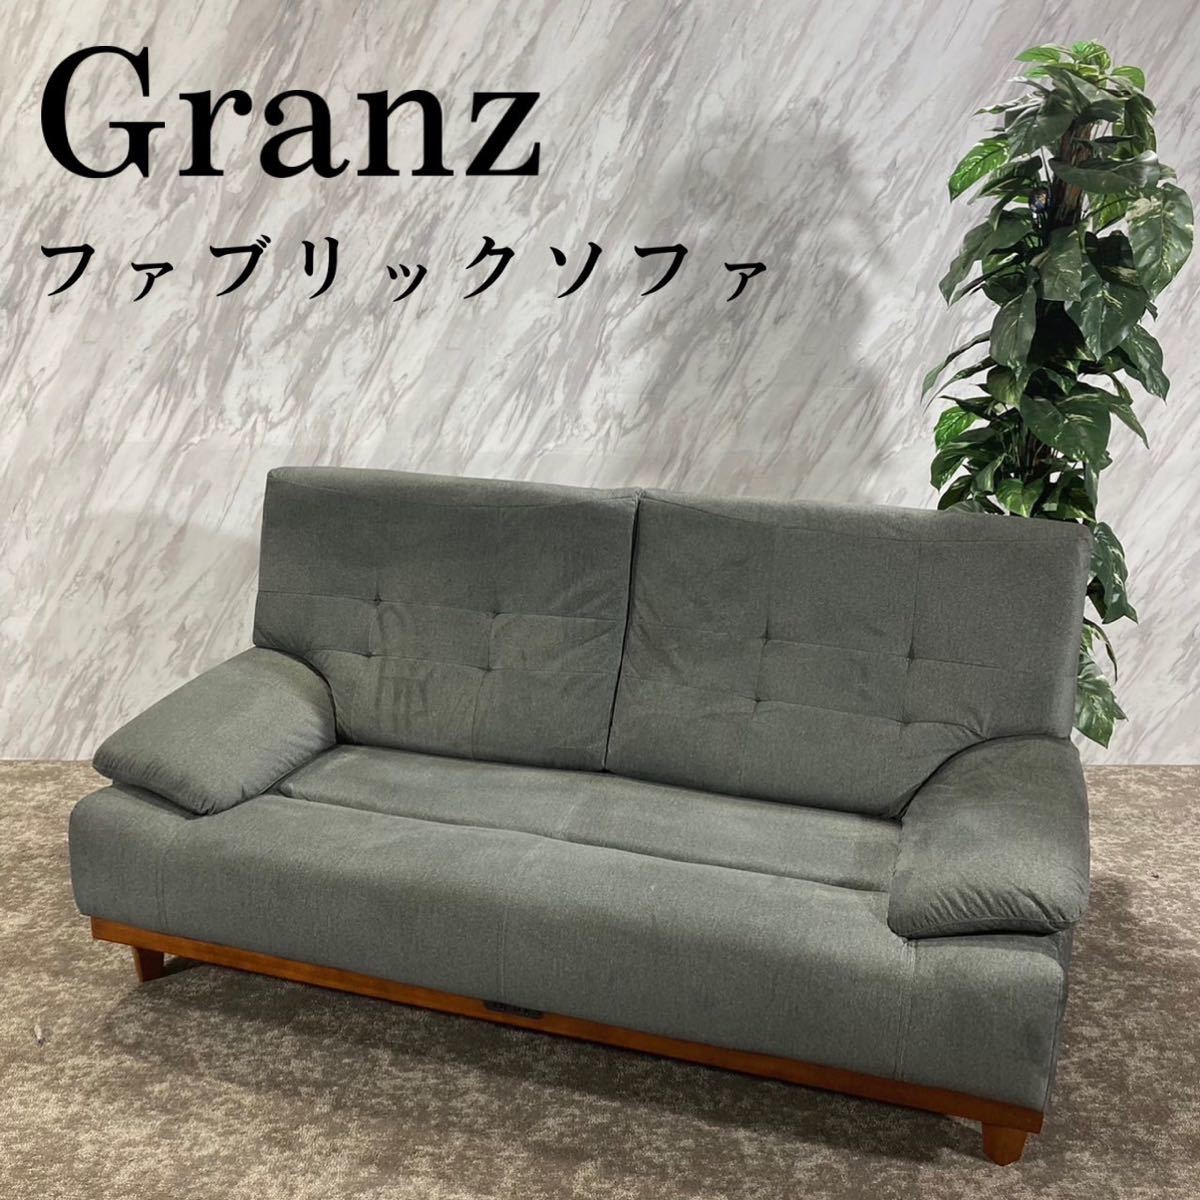 Granz グランツ 2Pソファ コンセント ファブリック インテリア F477